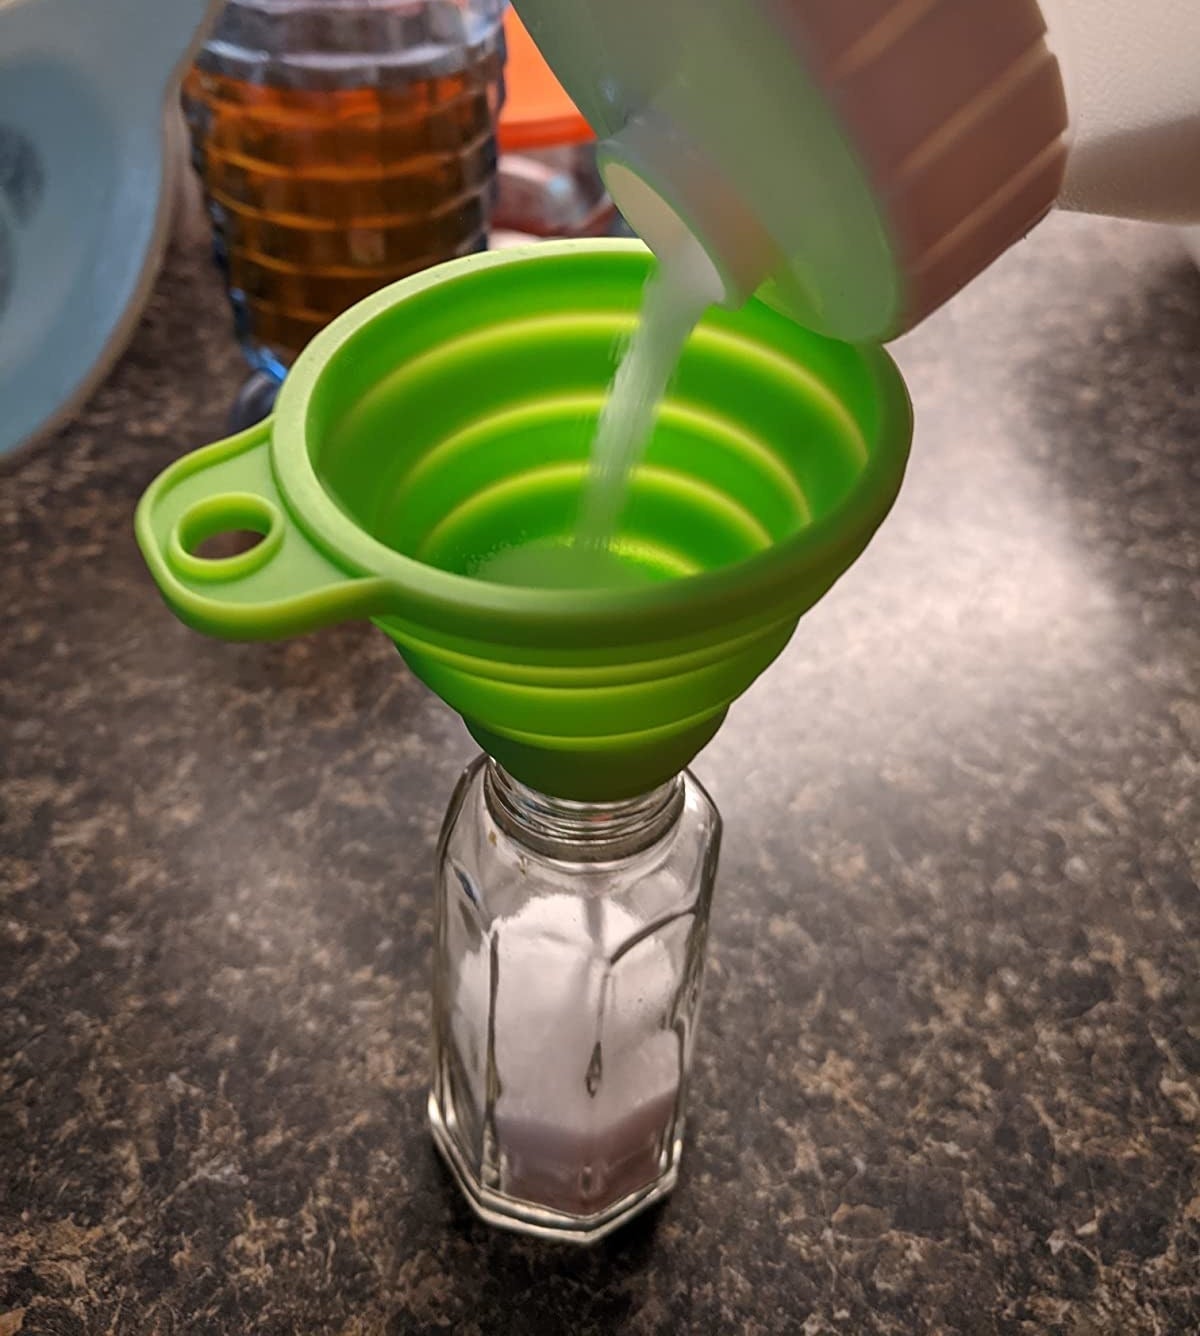 Reviewer refilling salt shaker using green funnel